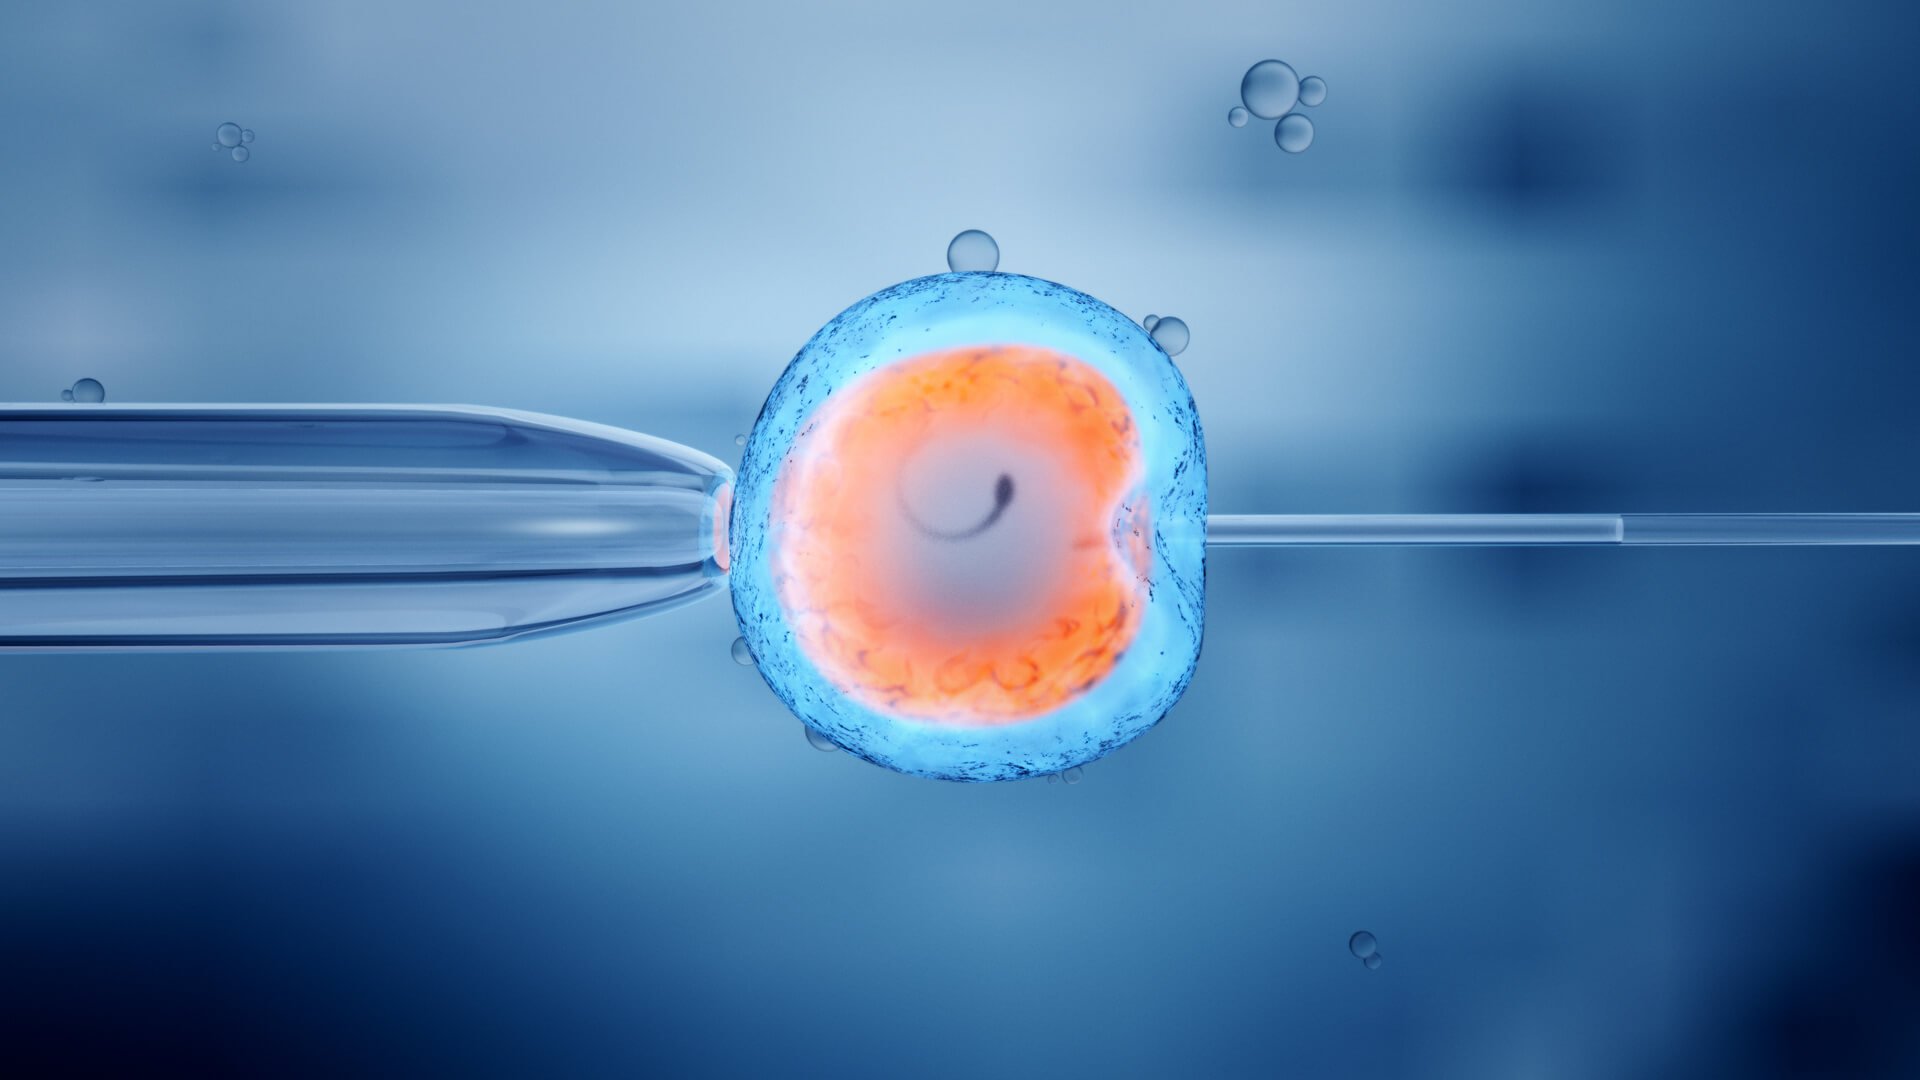 Kan artificiell insemination vara en orsak till cancer?